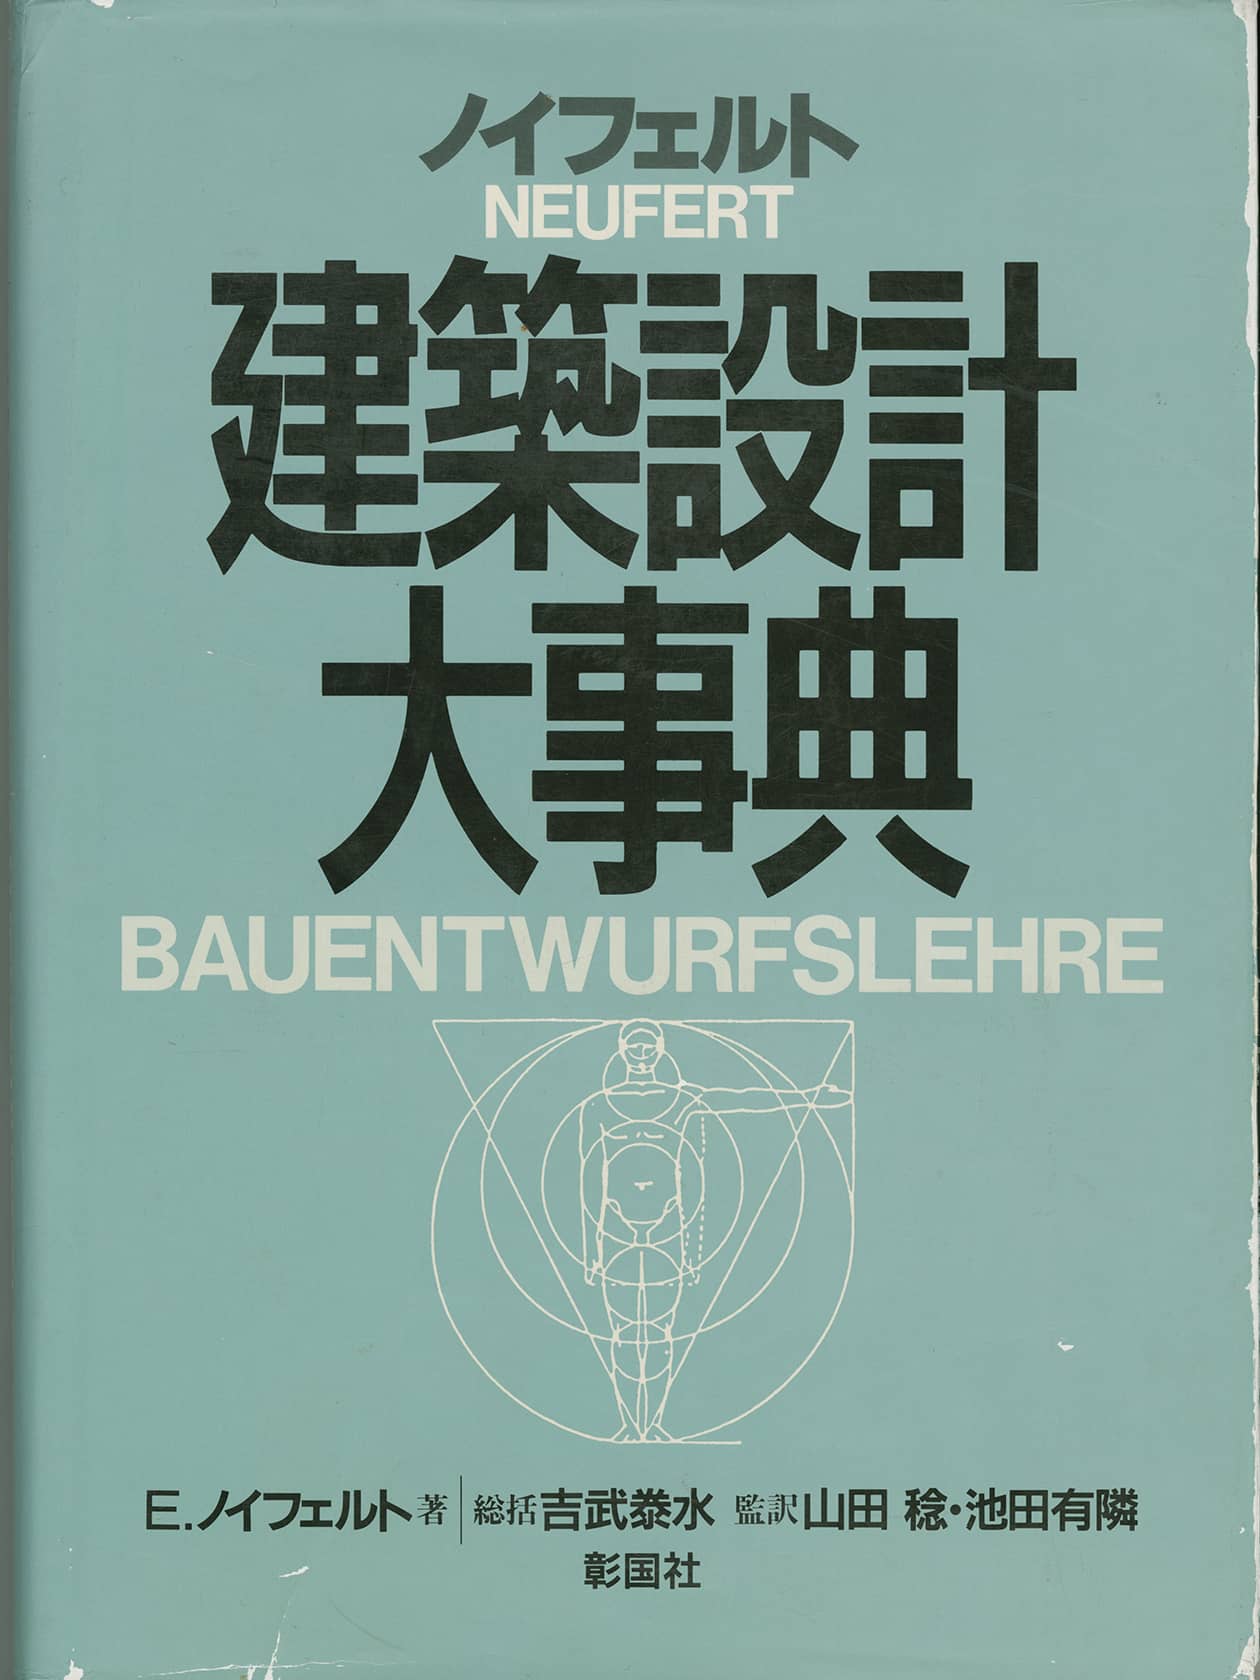 Japanische Ausgabe  der Bauentwurfslehre von Ernst Neufert, 1988